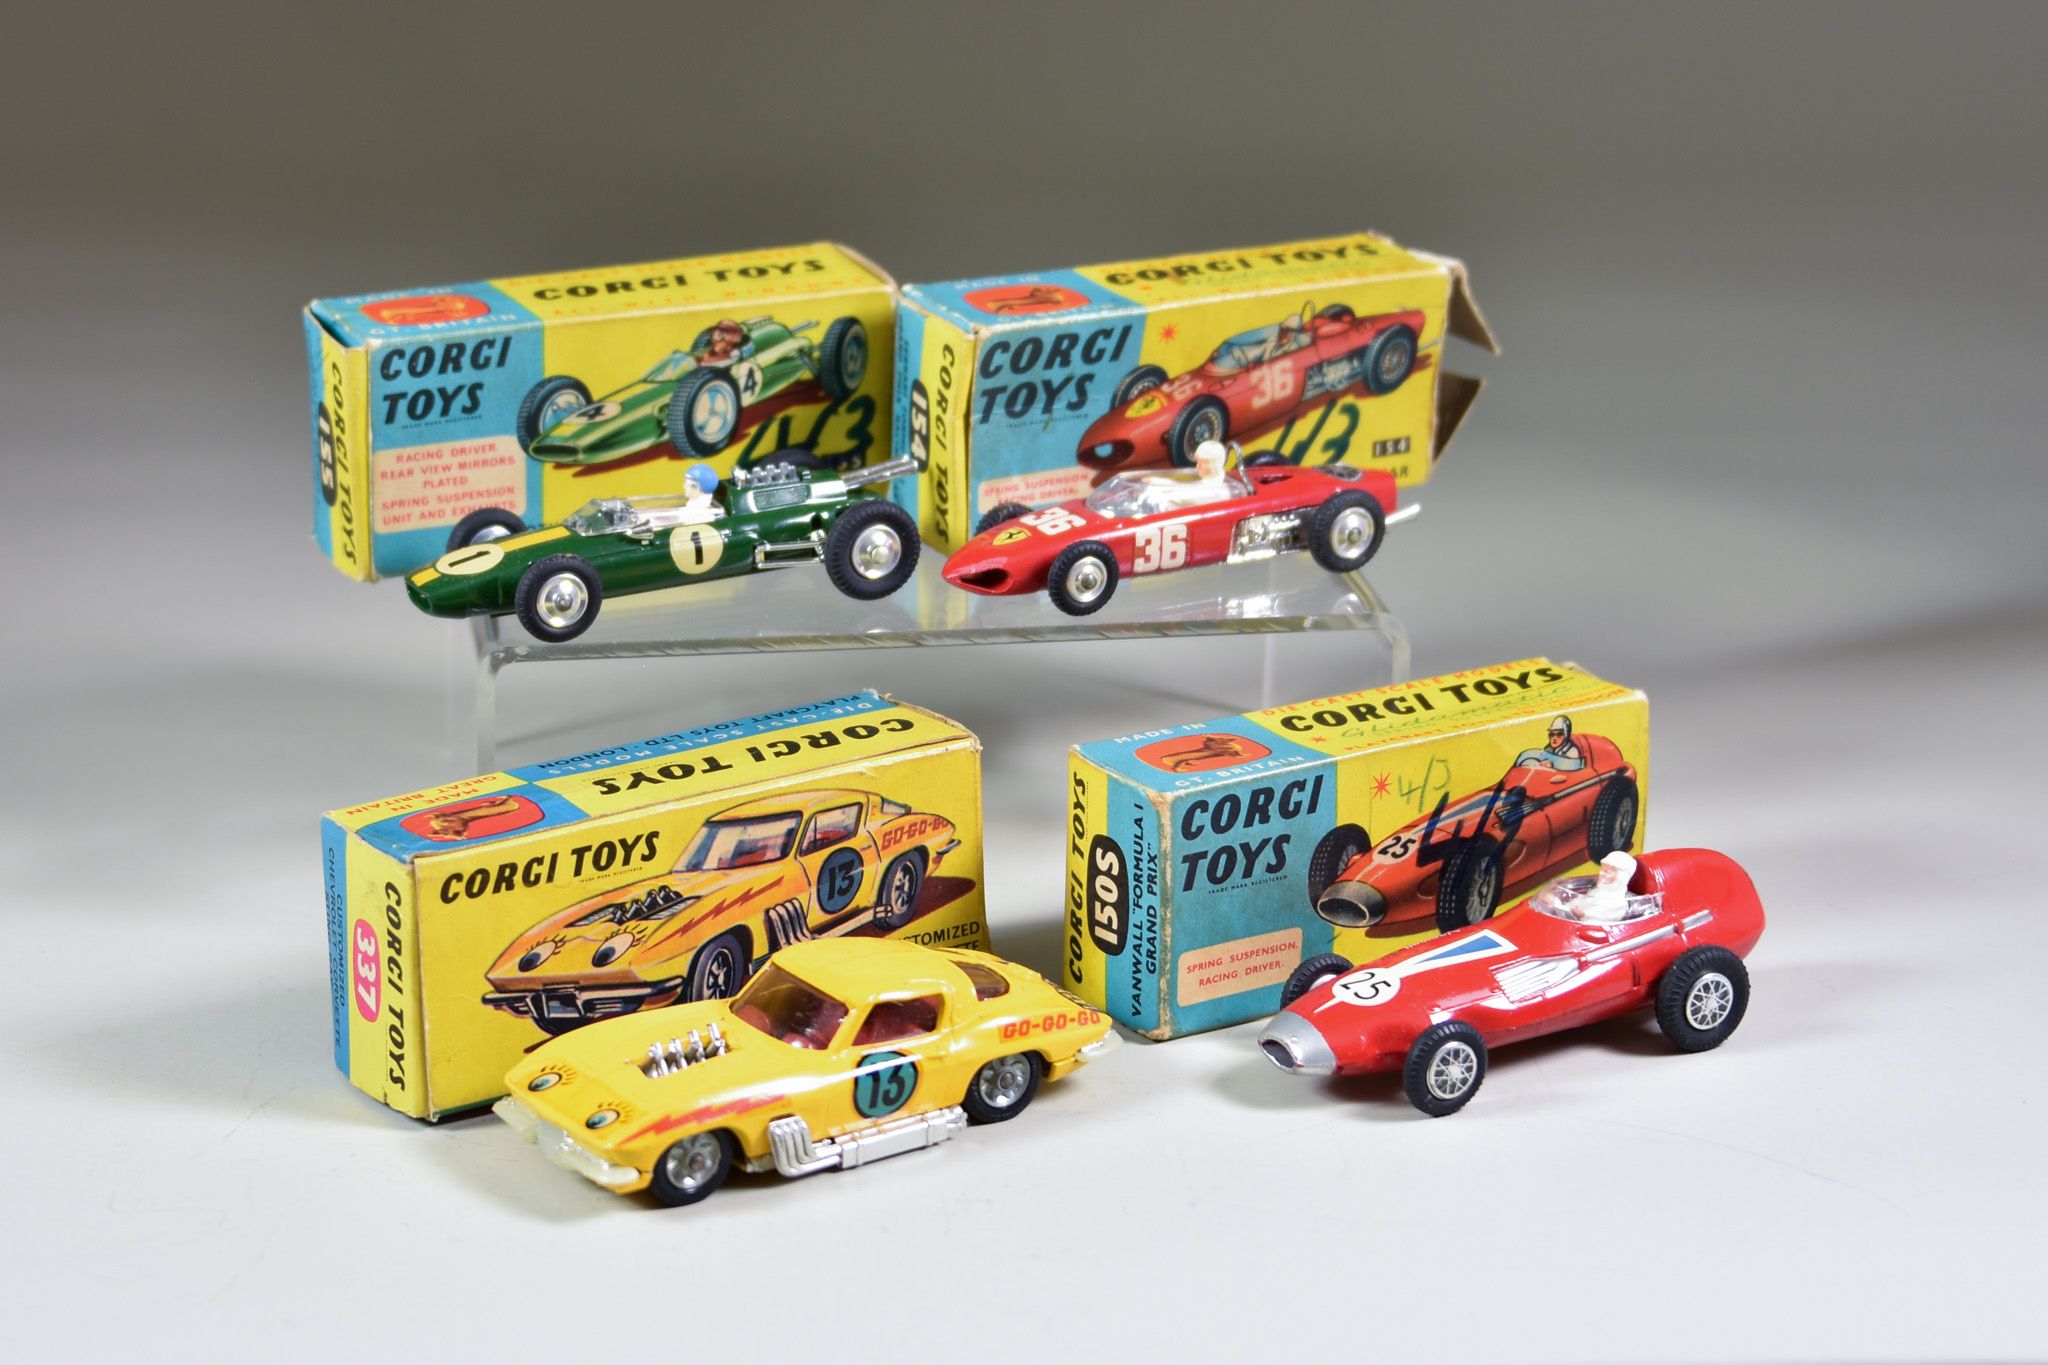 A Corgi Toys No. 1505 "Vanwall Formula 1 Grand Prix", No. 154 "Ferrari Formula 1 Grand Prix", No.